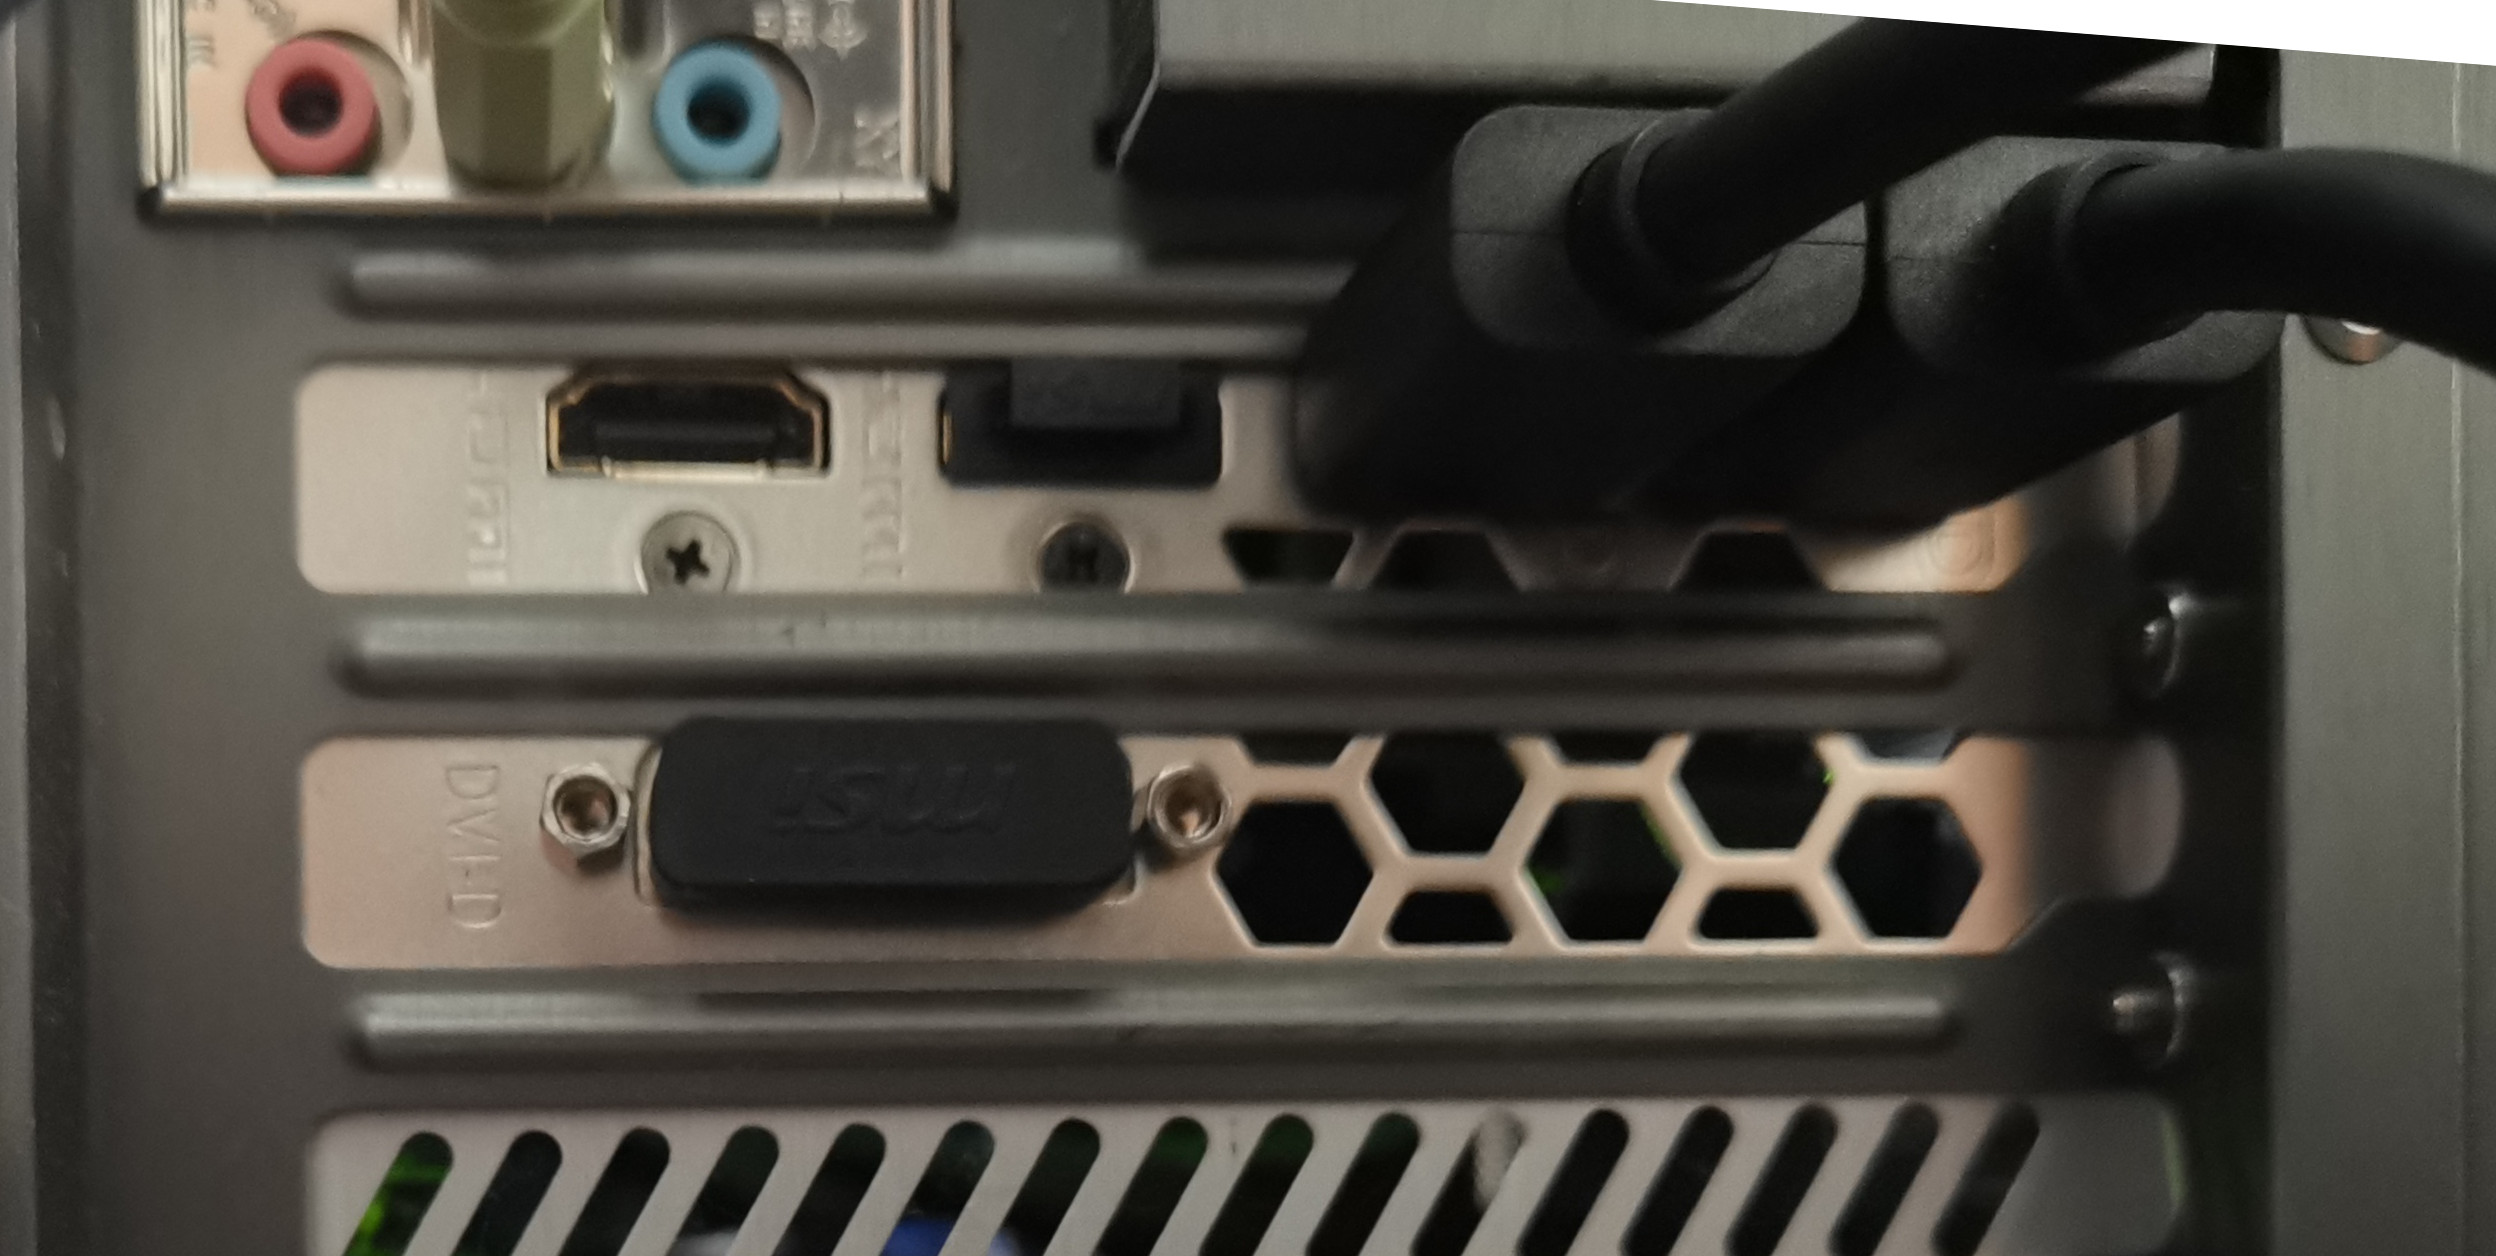 MSI Radeon RX580 connectors